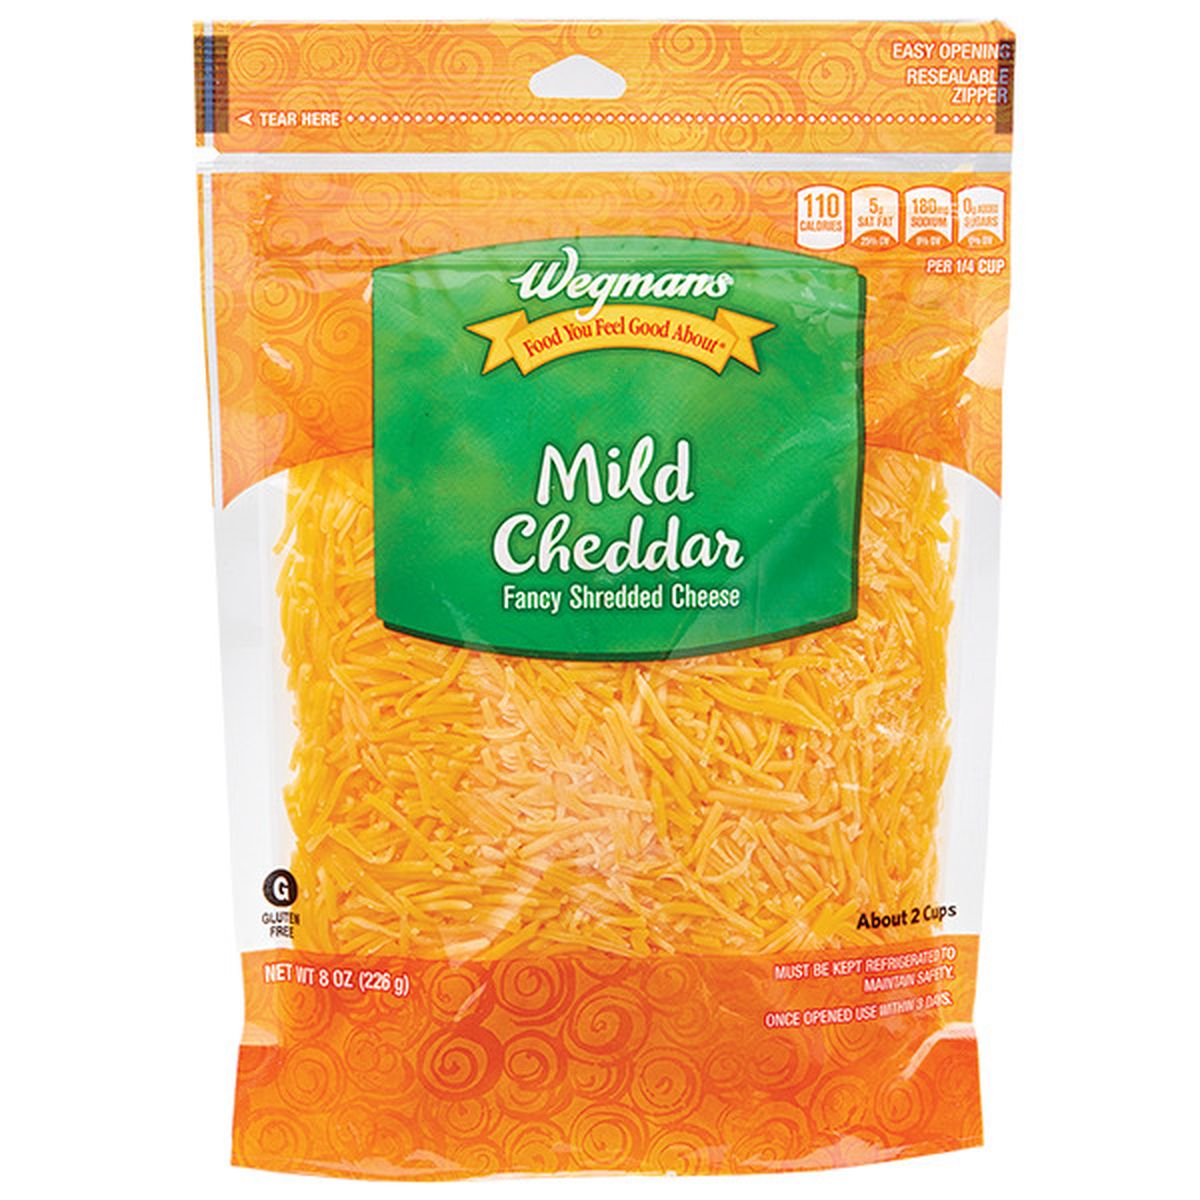 Calories in Wegmans Mild Cheddar Fancy Shredded Cheese